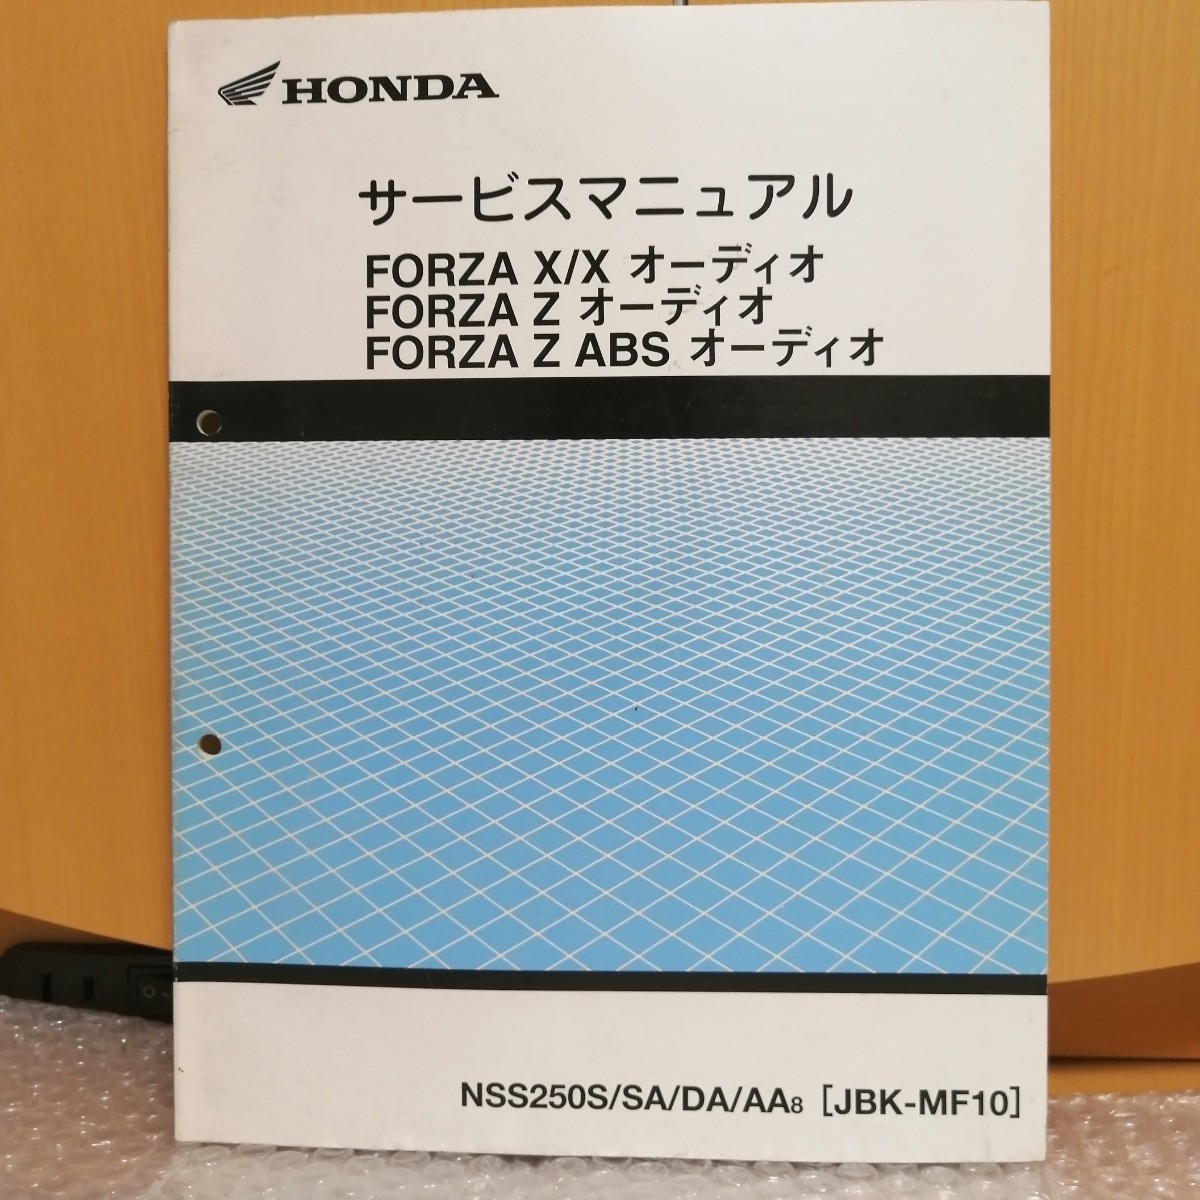 ホンダ FORZA X/X オーディオ FORZA Z オーディオ サービスマニュアル 追補版 フォルツァ ABS NSS250S JBK-MF10 メンテナンス 修理書3078の画像1